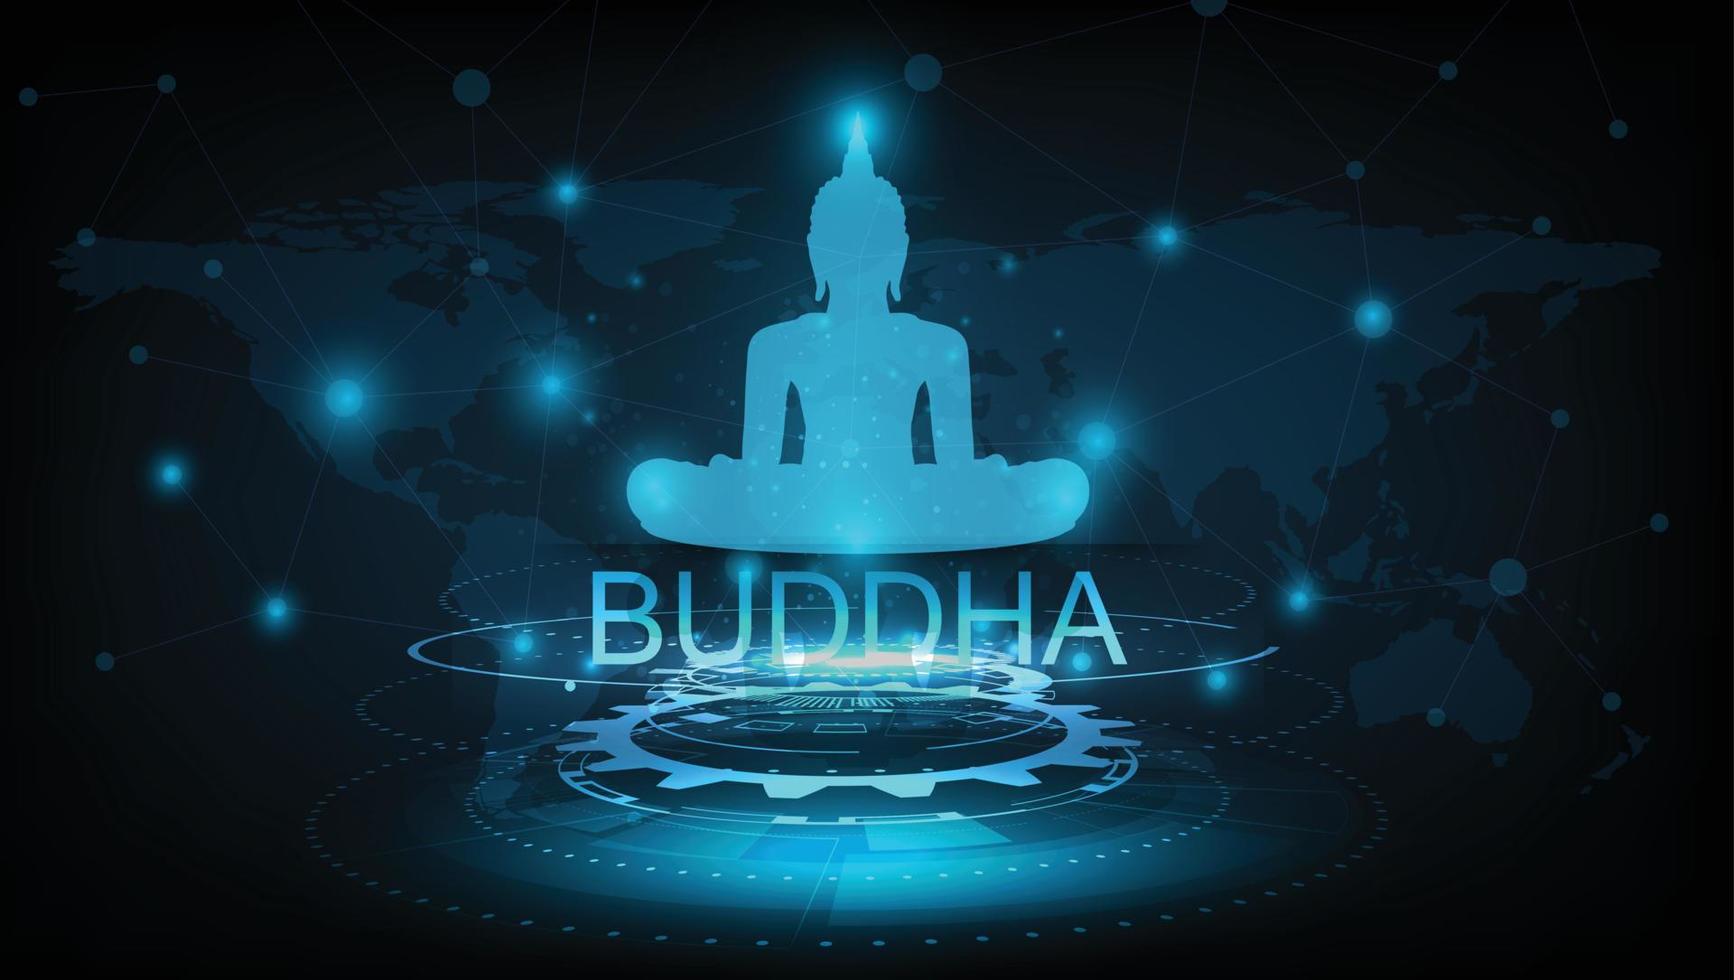 feliz buddha purnima cartaz mínimo vesak lord buddha em meditação na bela luz da lua vindo de volta - vetor